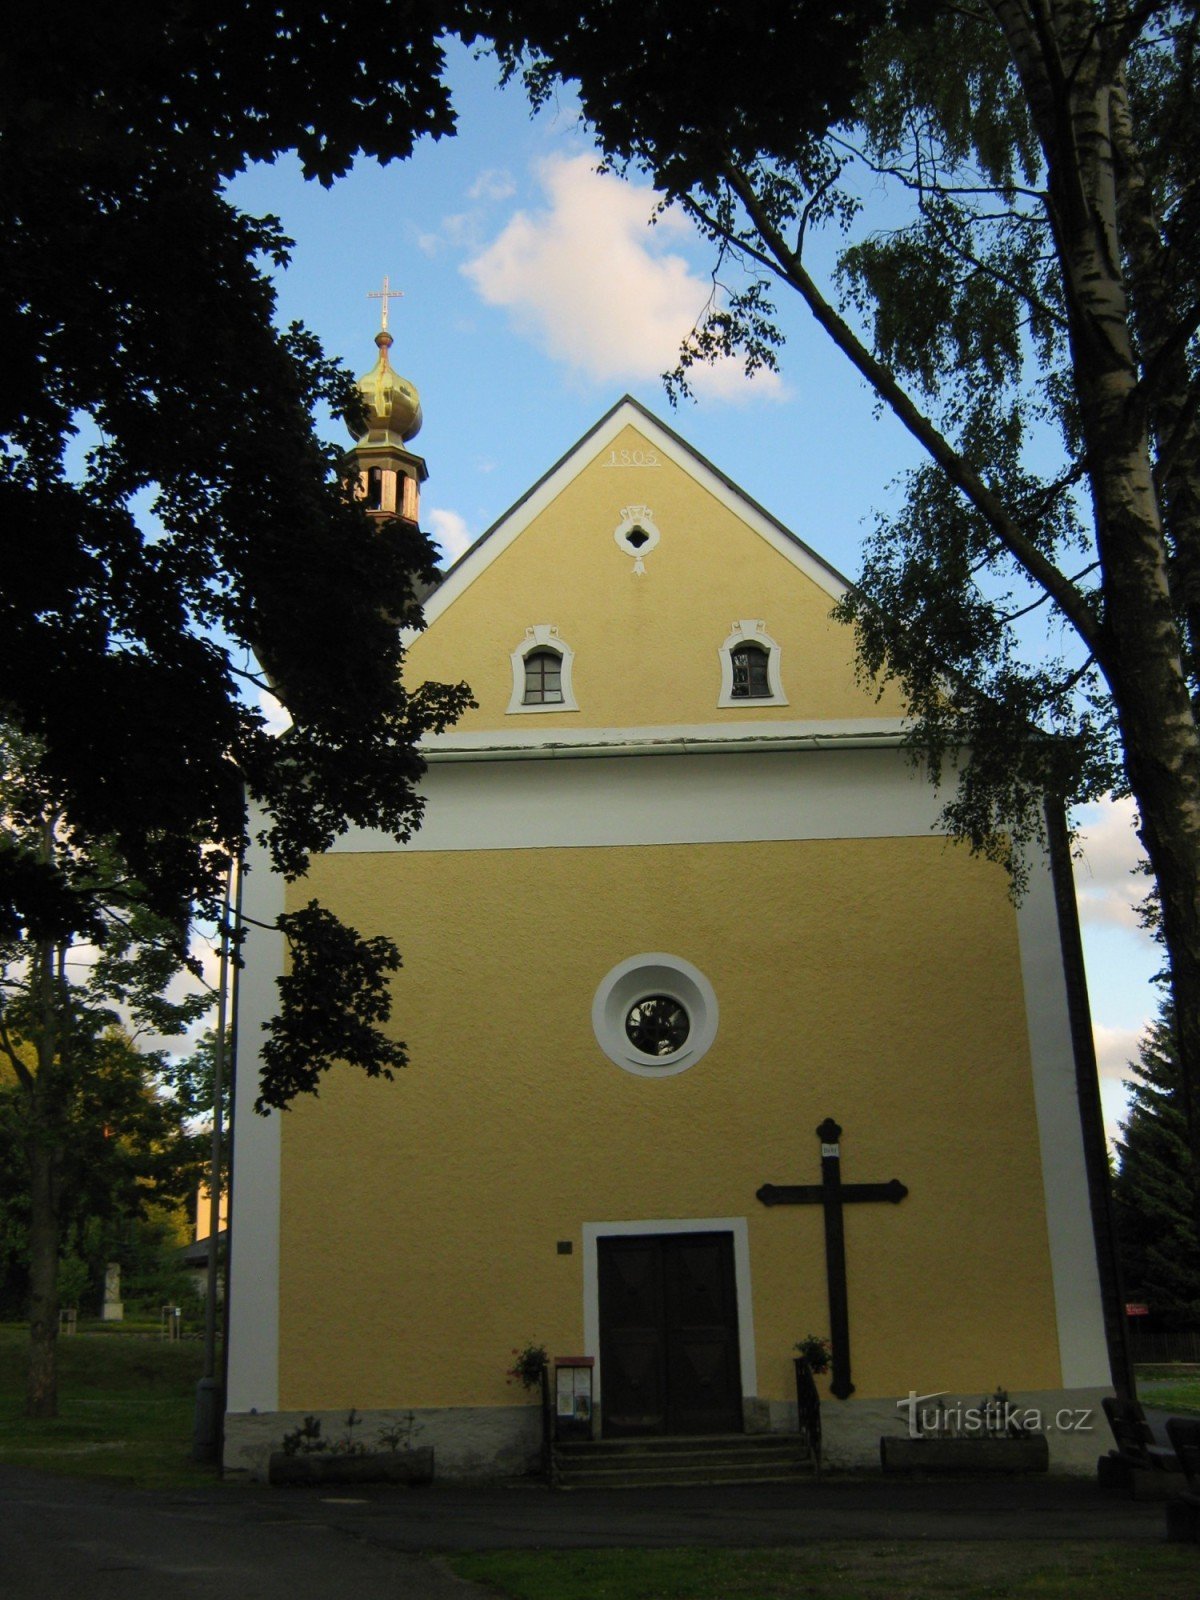 Srni - Igreja de St. Trindade